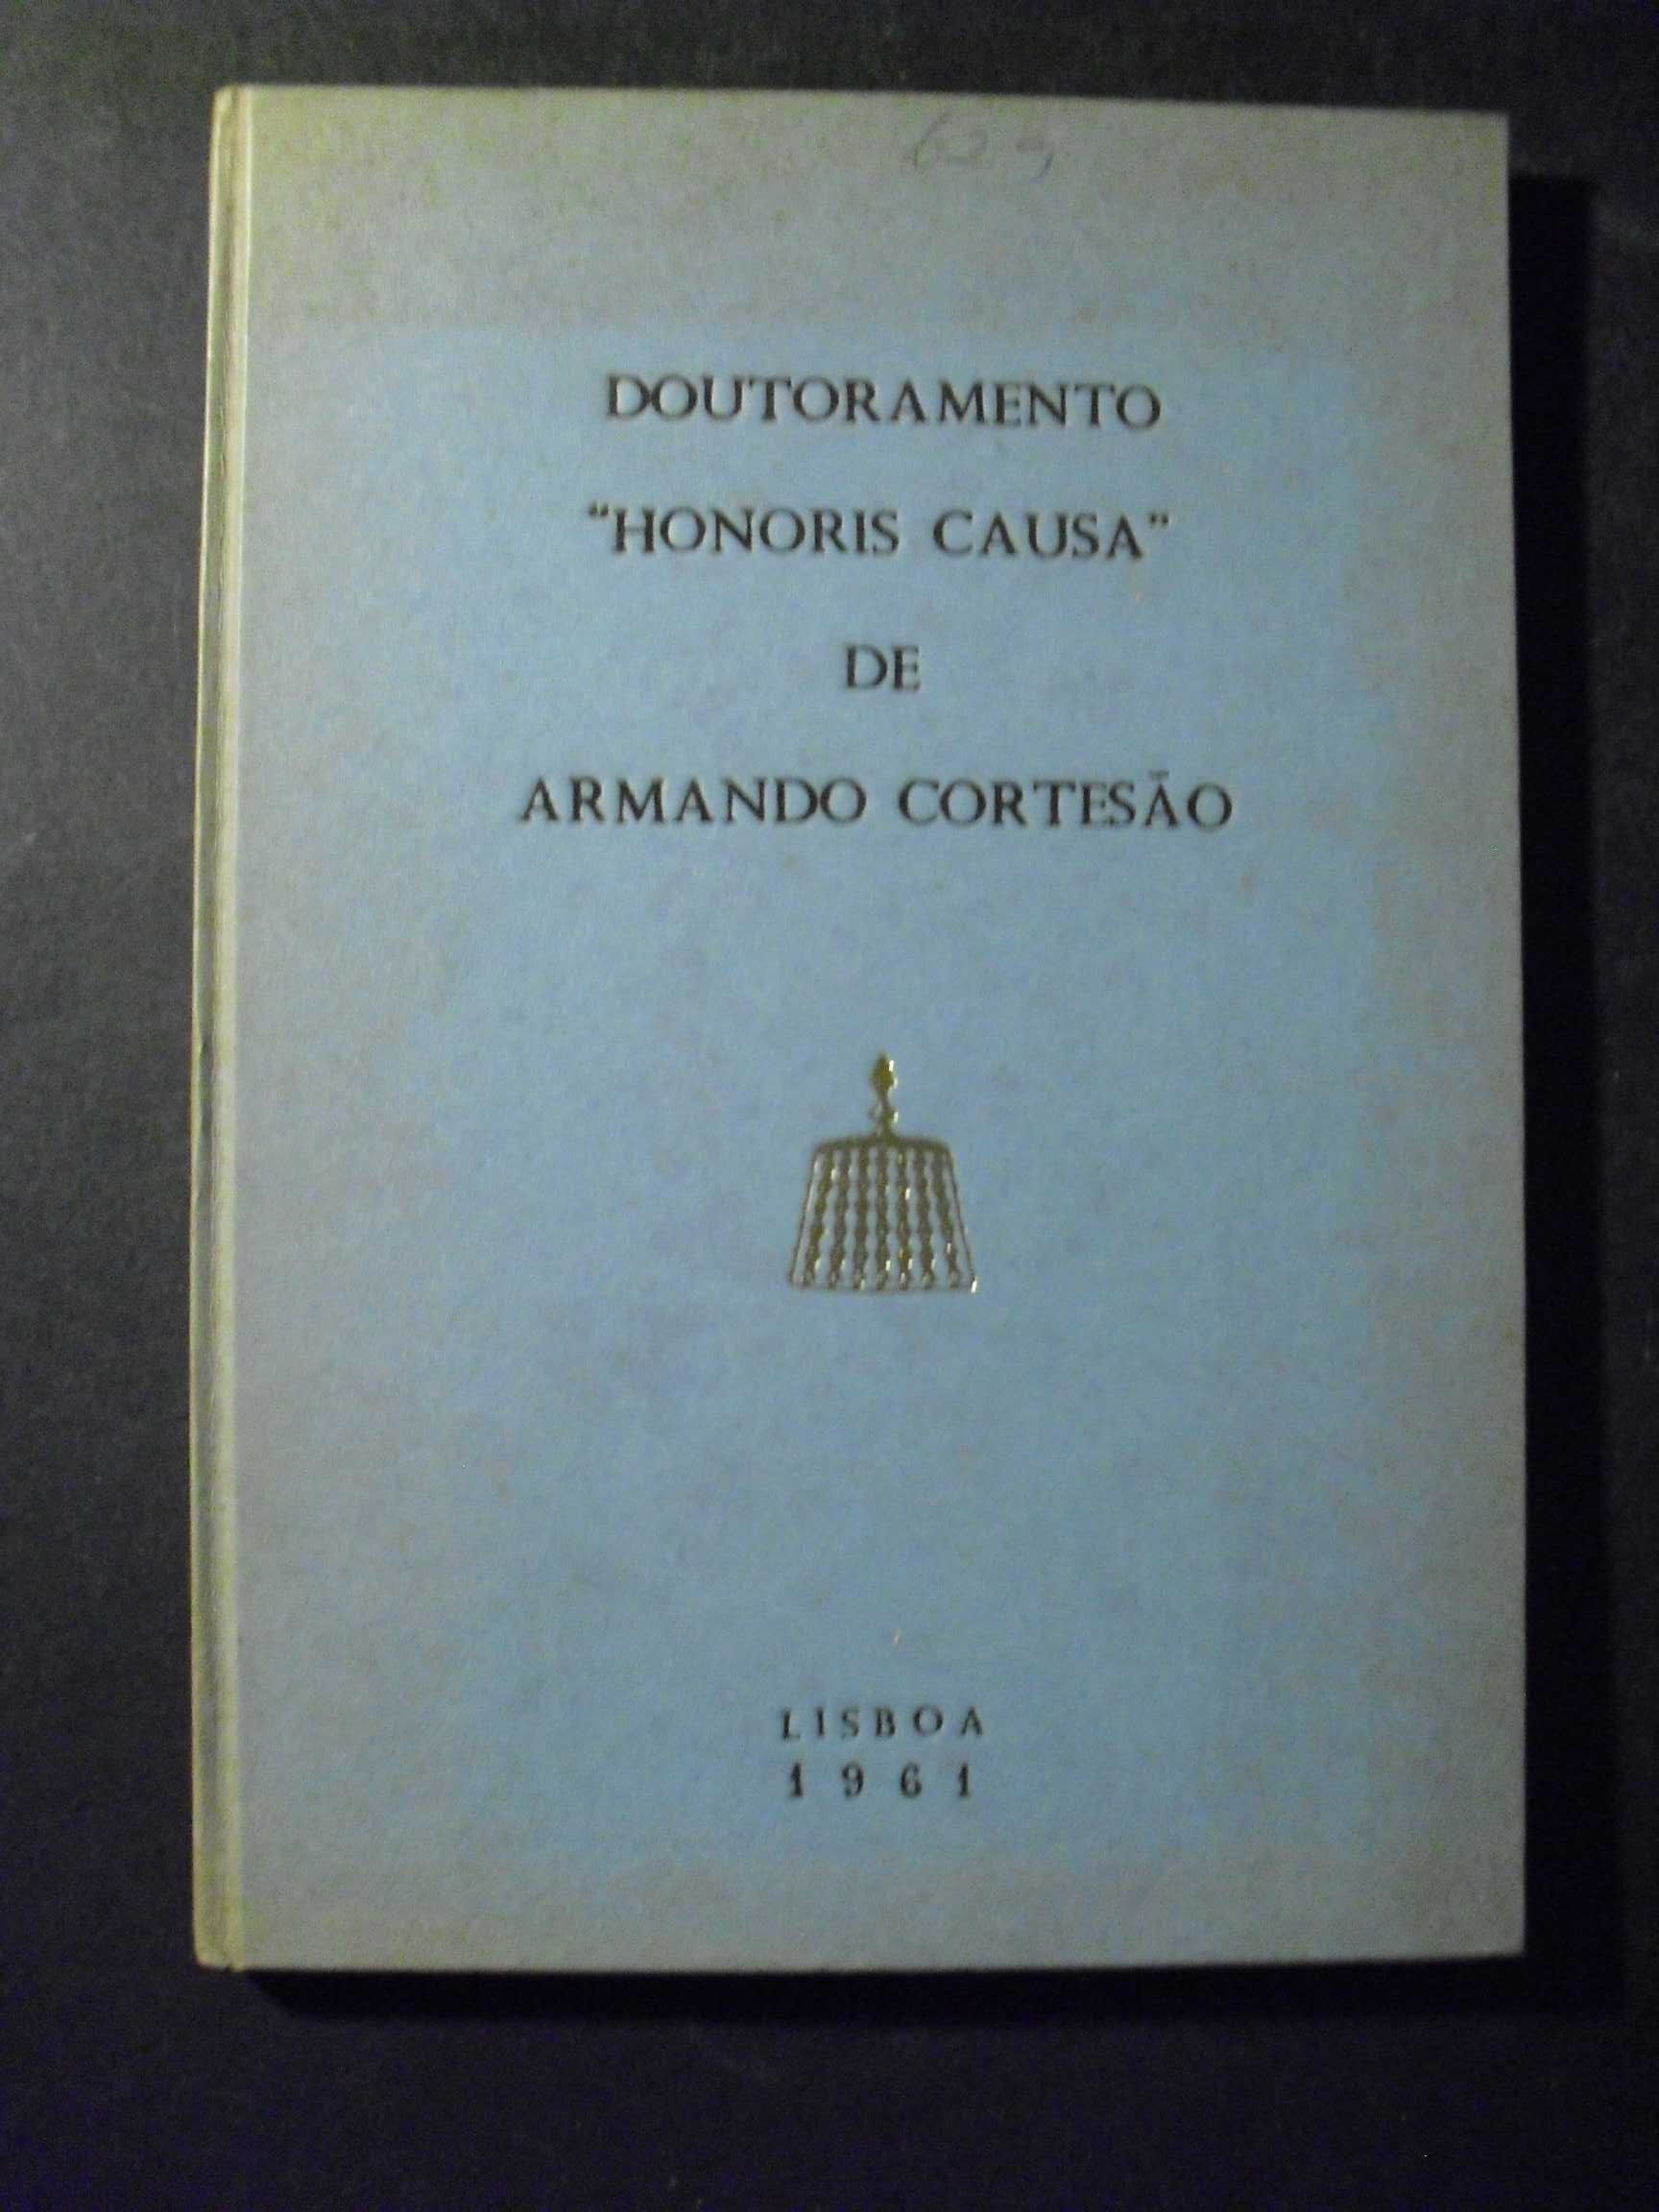 Doutoramento “Honoris Causa” de Armando Cortesão